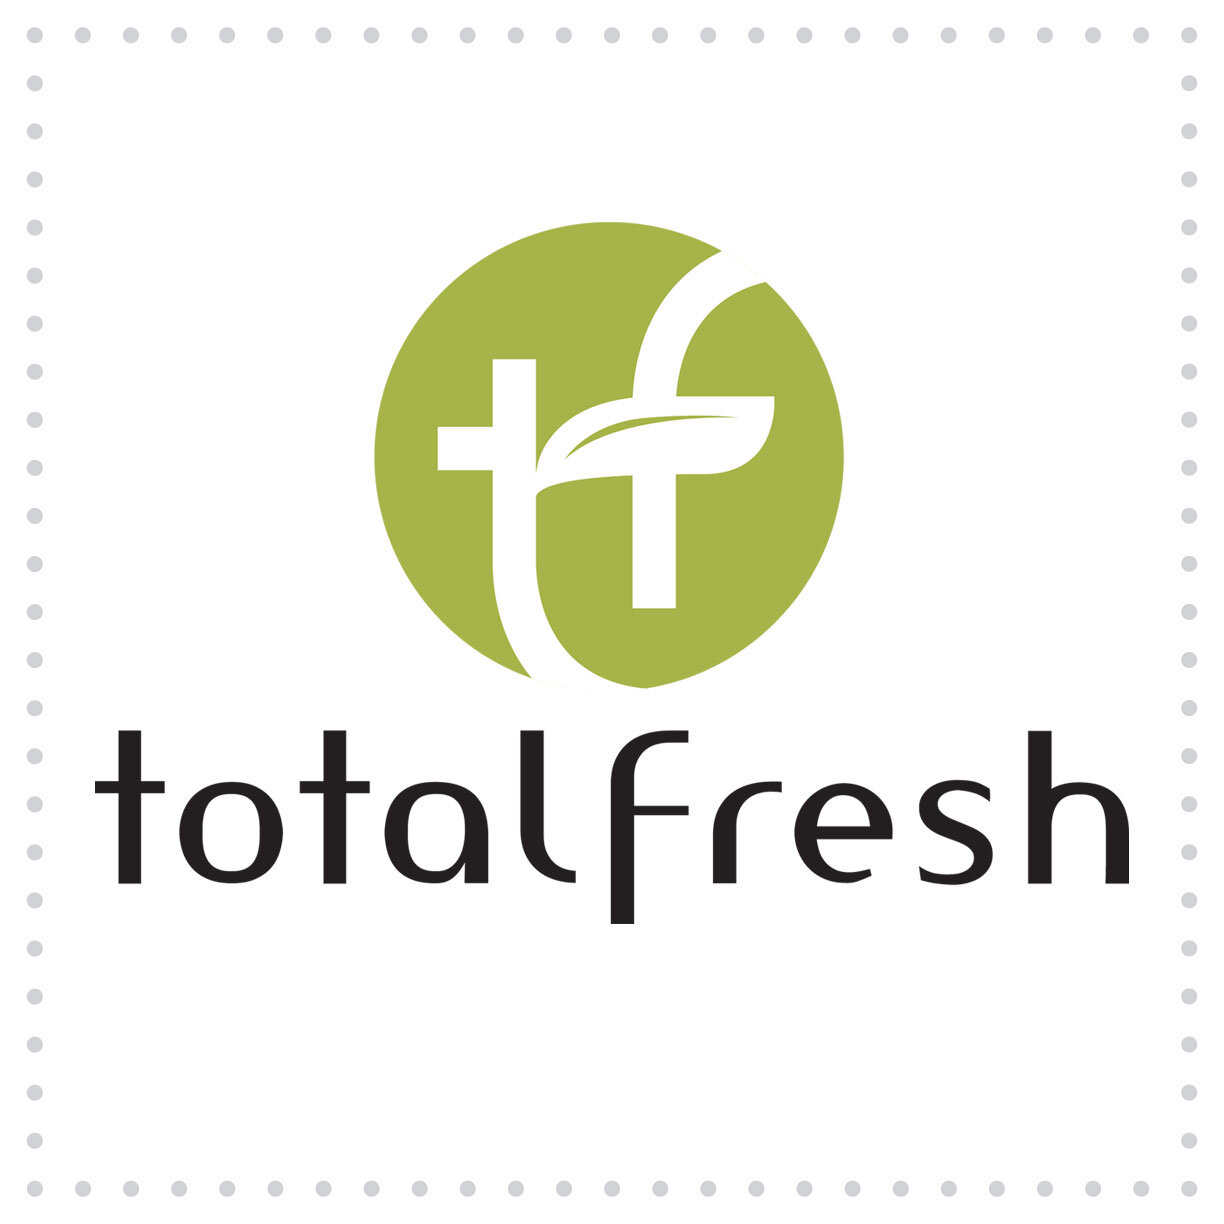 Ball-LogoDesign-TotalFresh.jpg